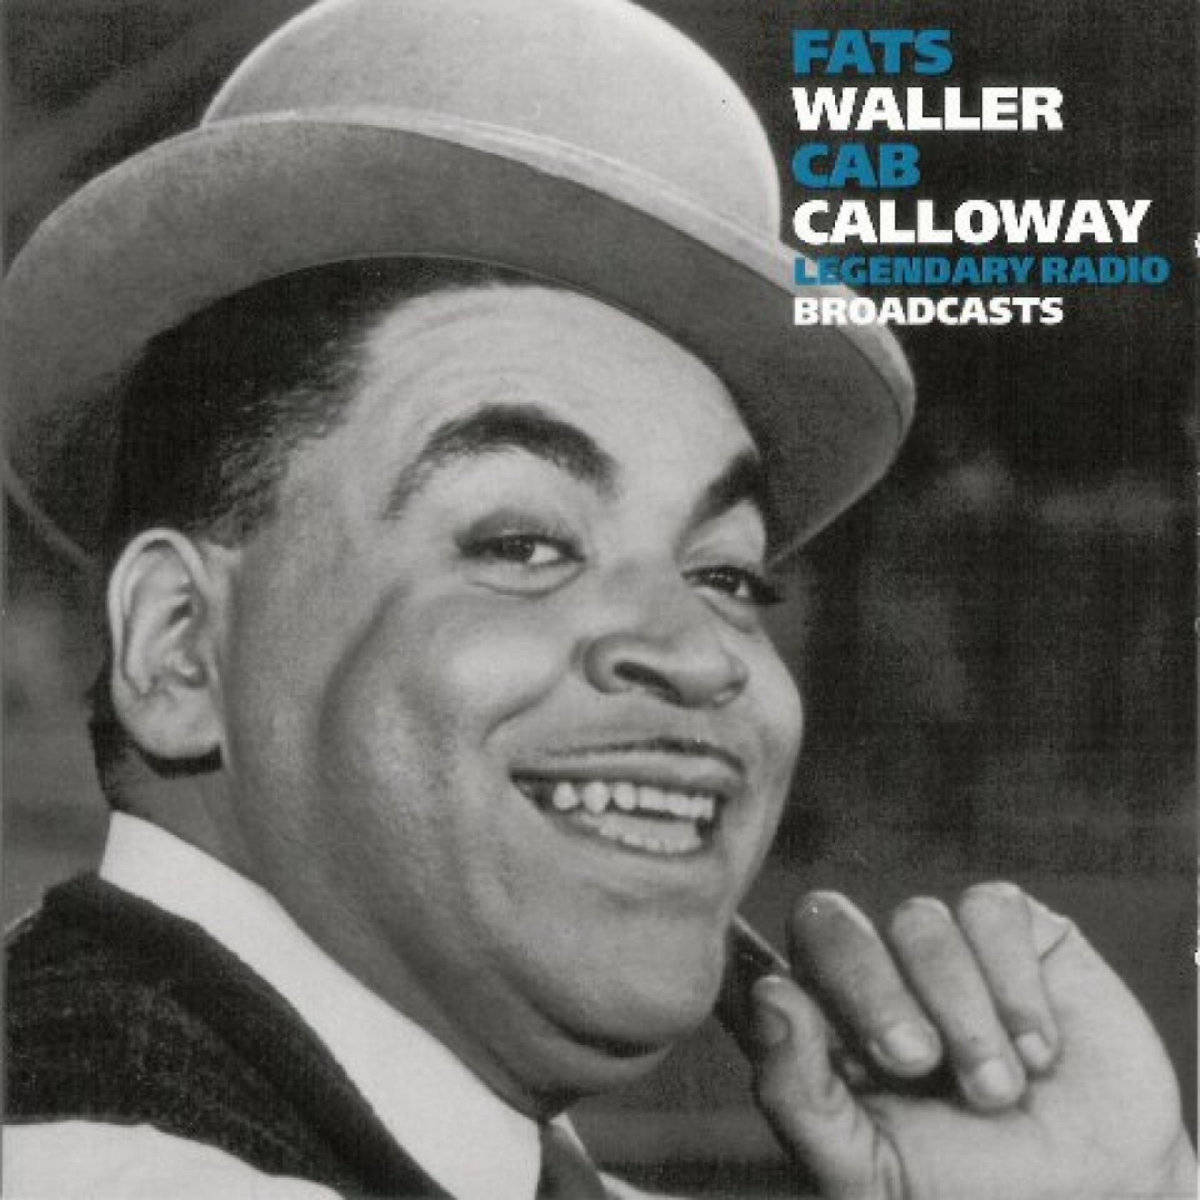 Fatswaller Y Cab Calloway: Transmisiones Legendarias De Radio 2008. Fondo de pantalla